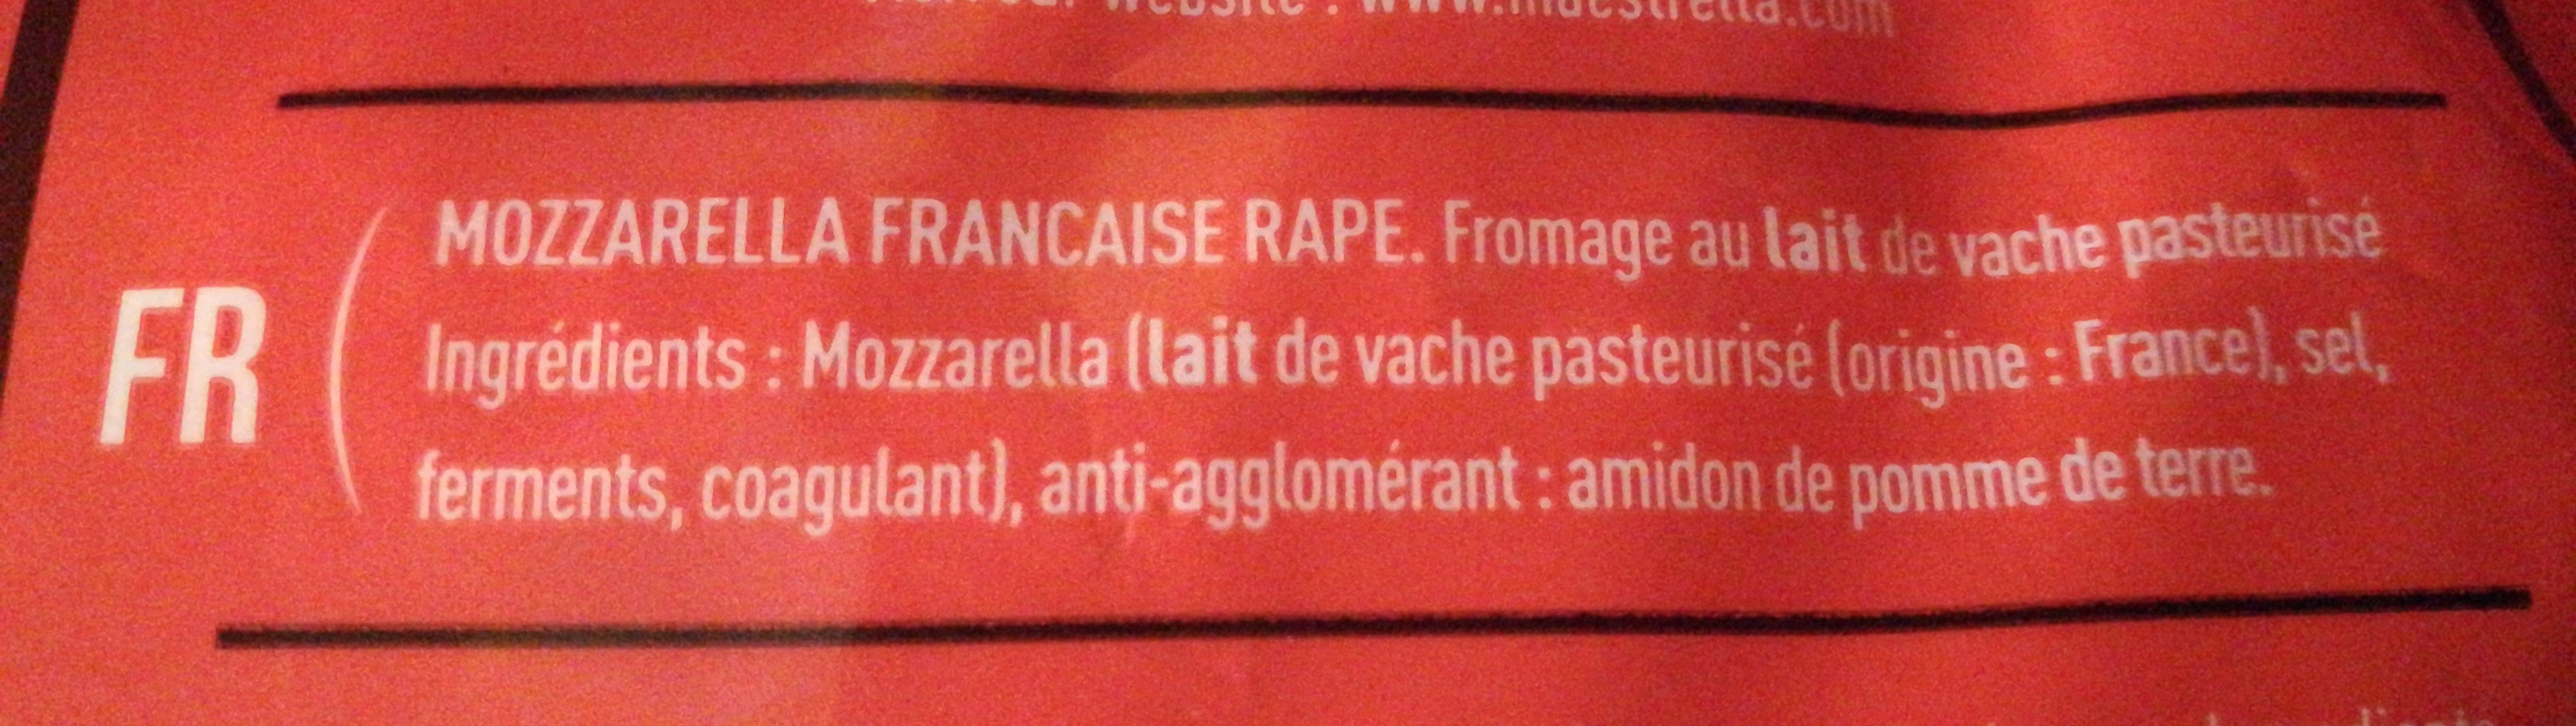 Mozzarella Rapée - Ingrédients